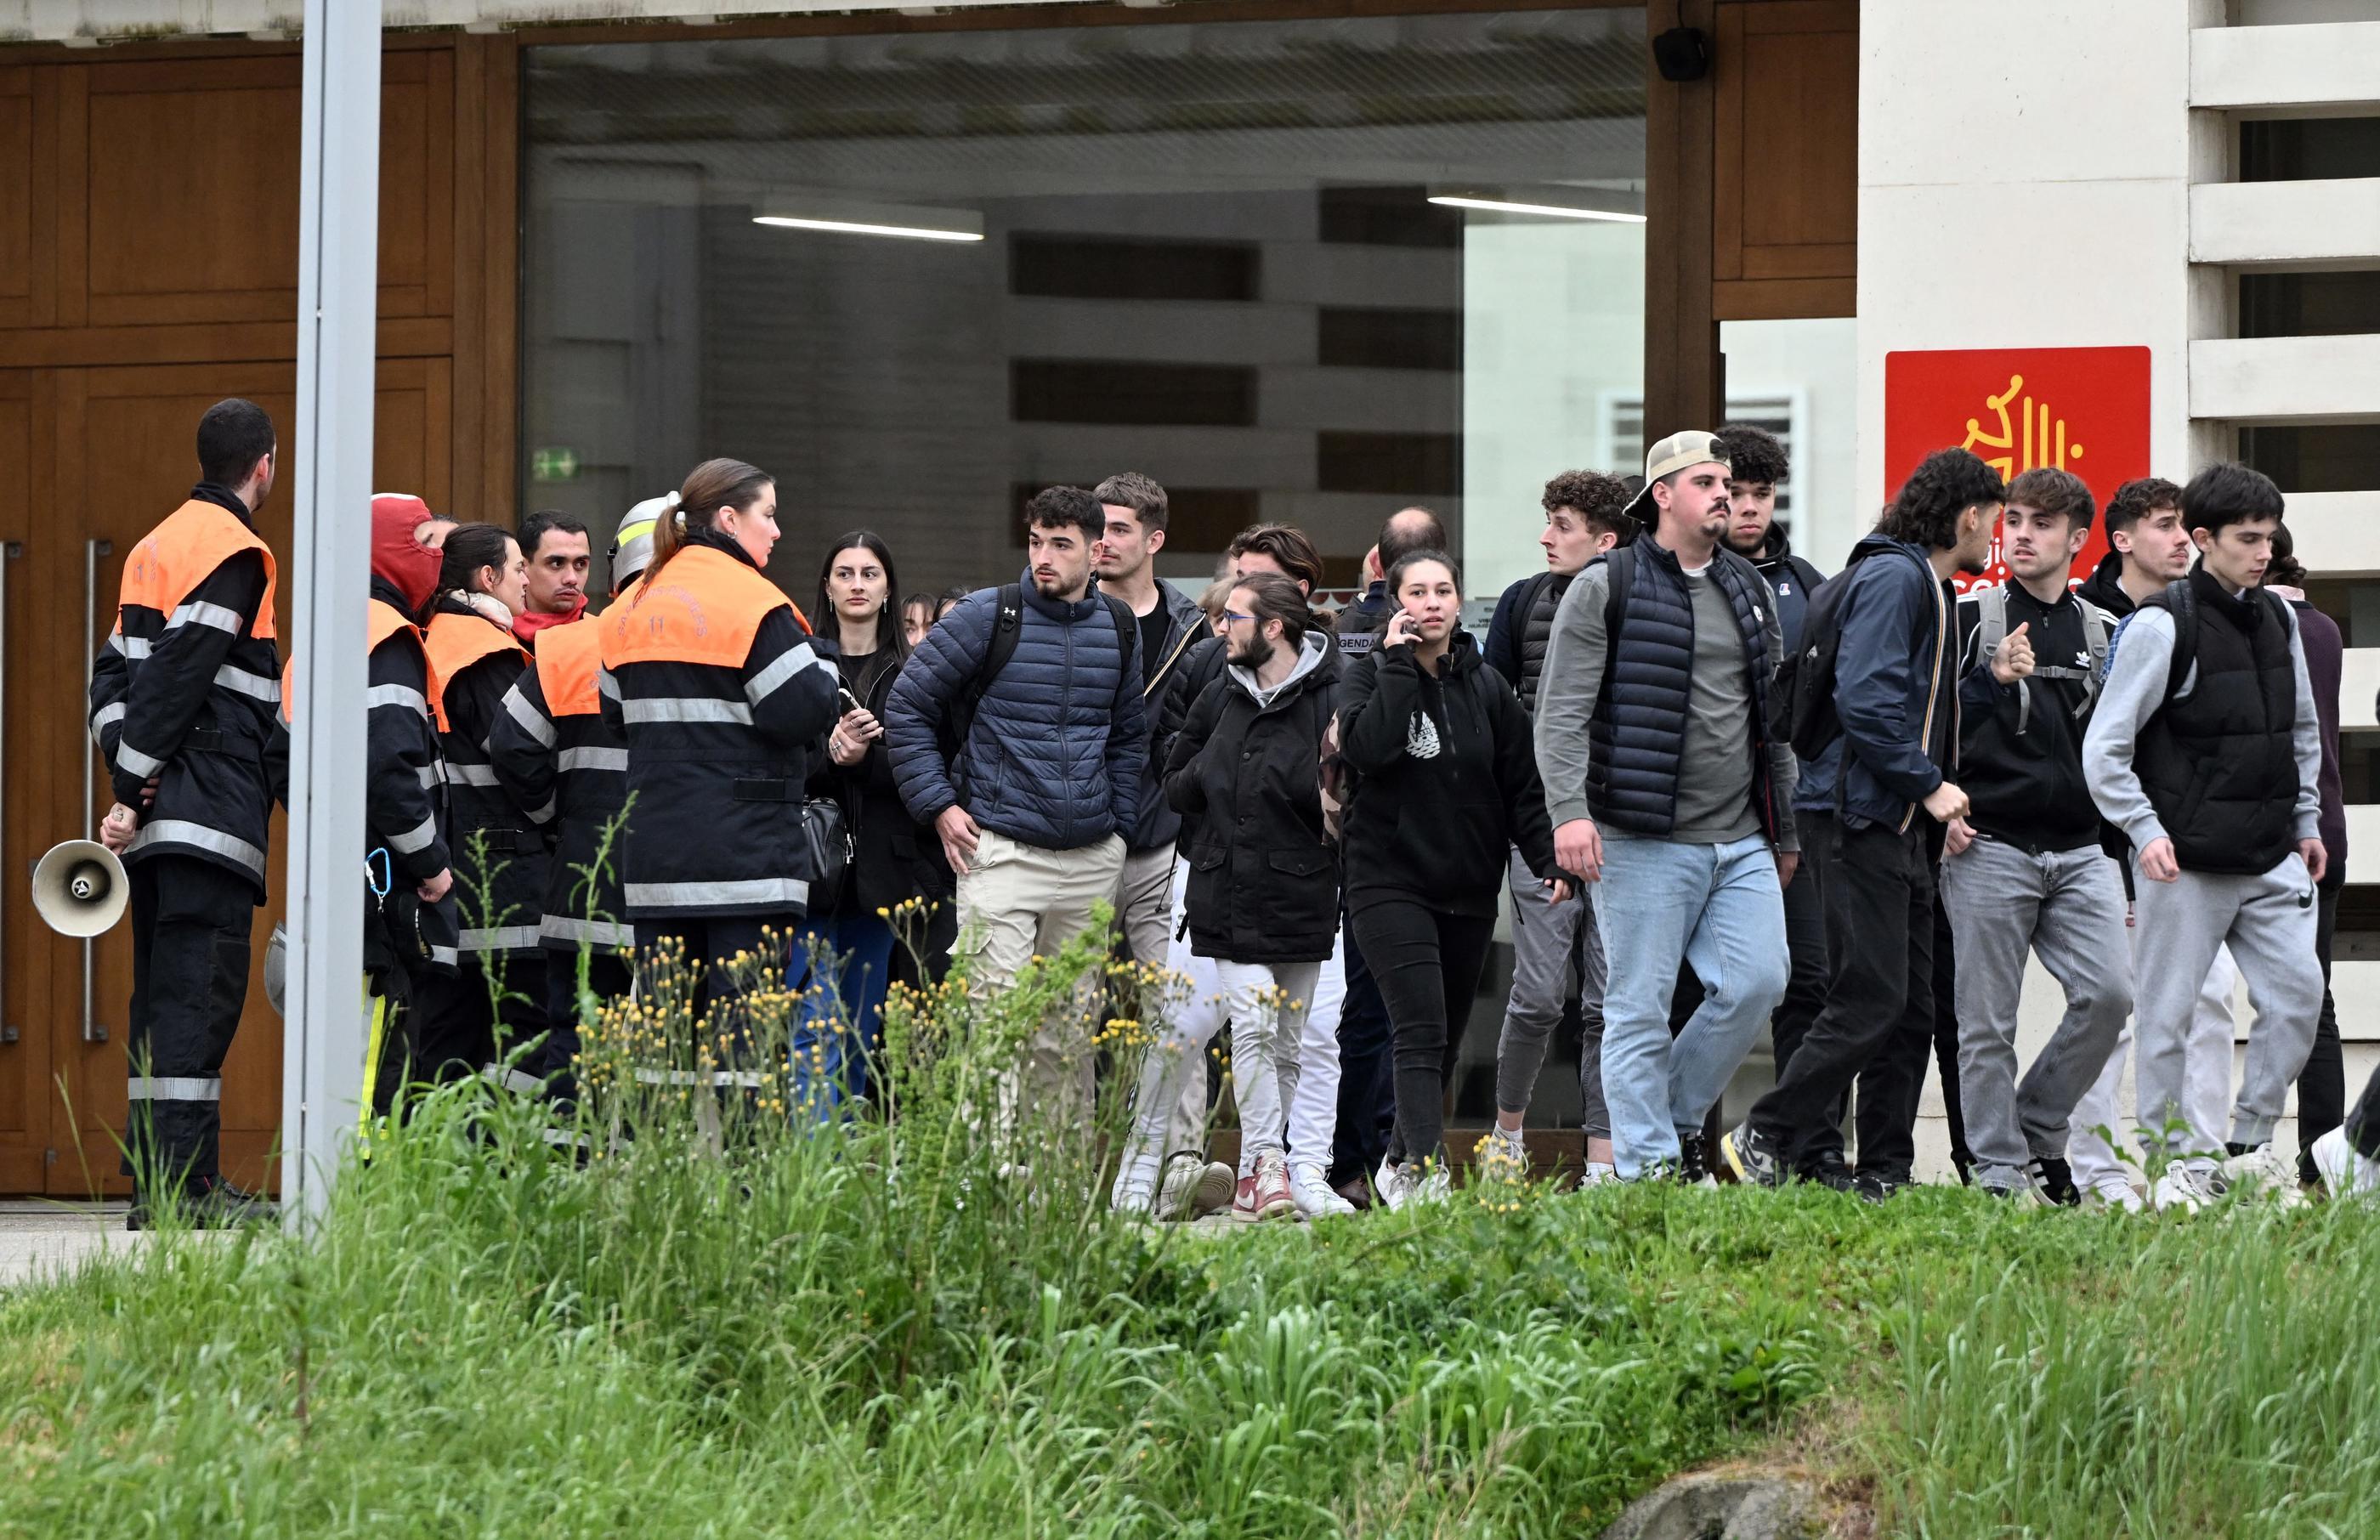 A Castelnaudary (Aude), le lycée Germaine-Tillion a été confiné puis évacué mardi après une alerte à la bombe. MaxPPP/Rémy Gabalda